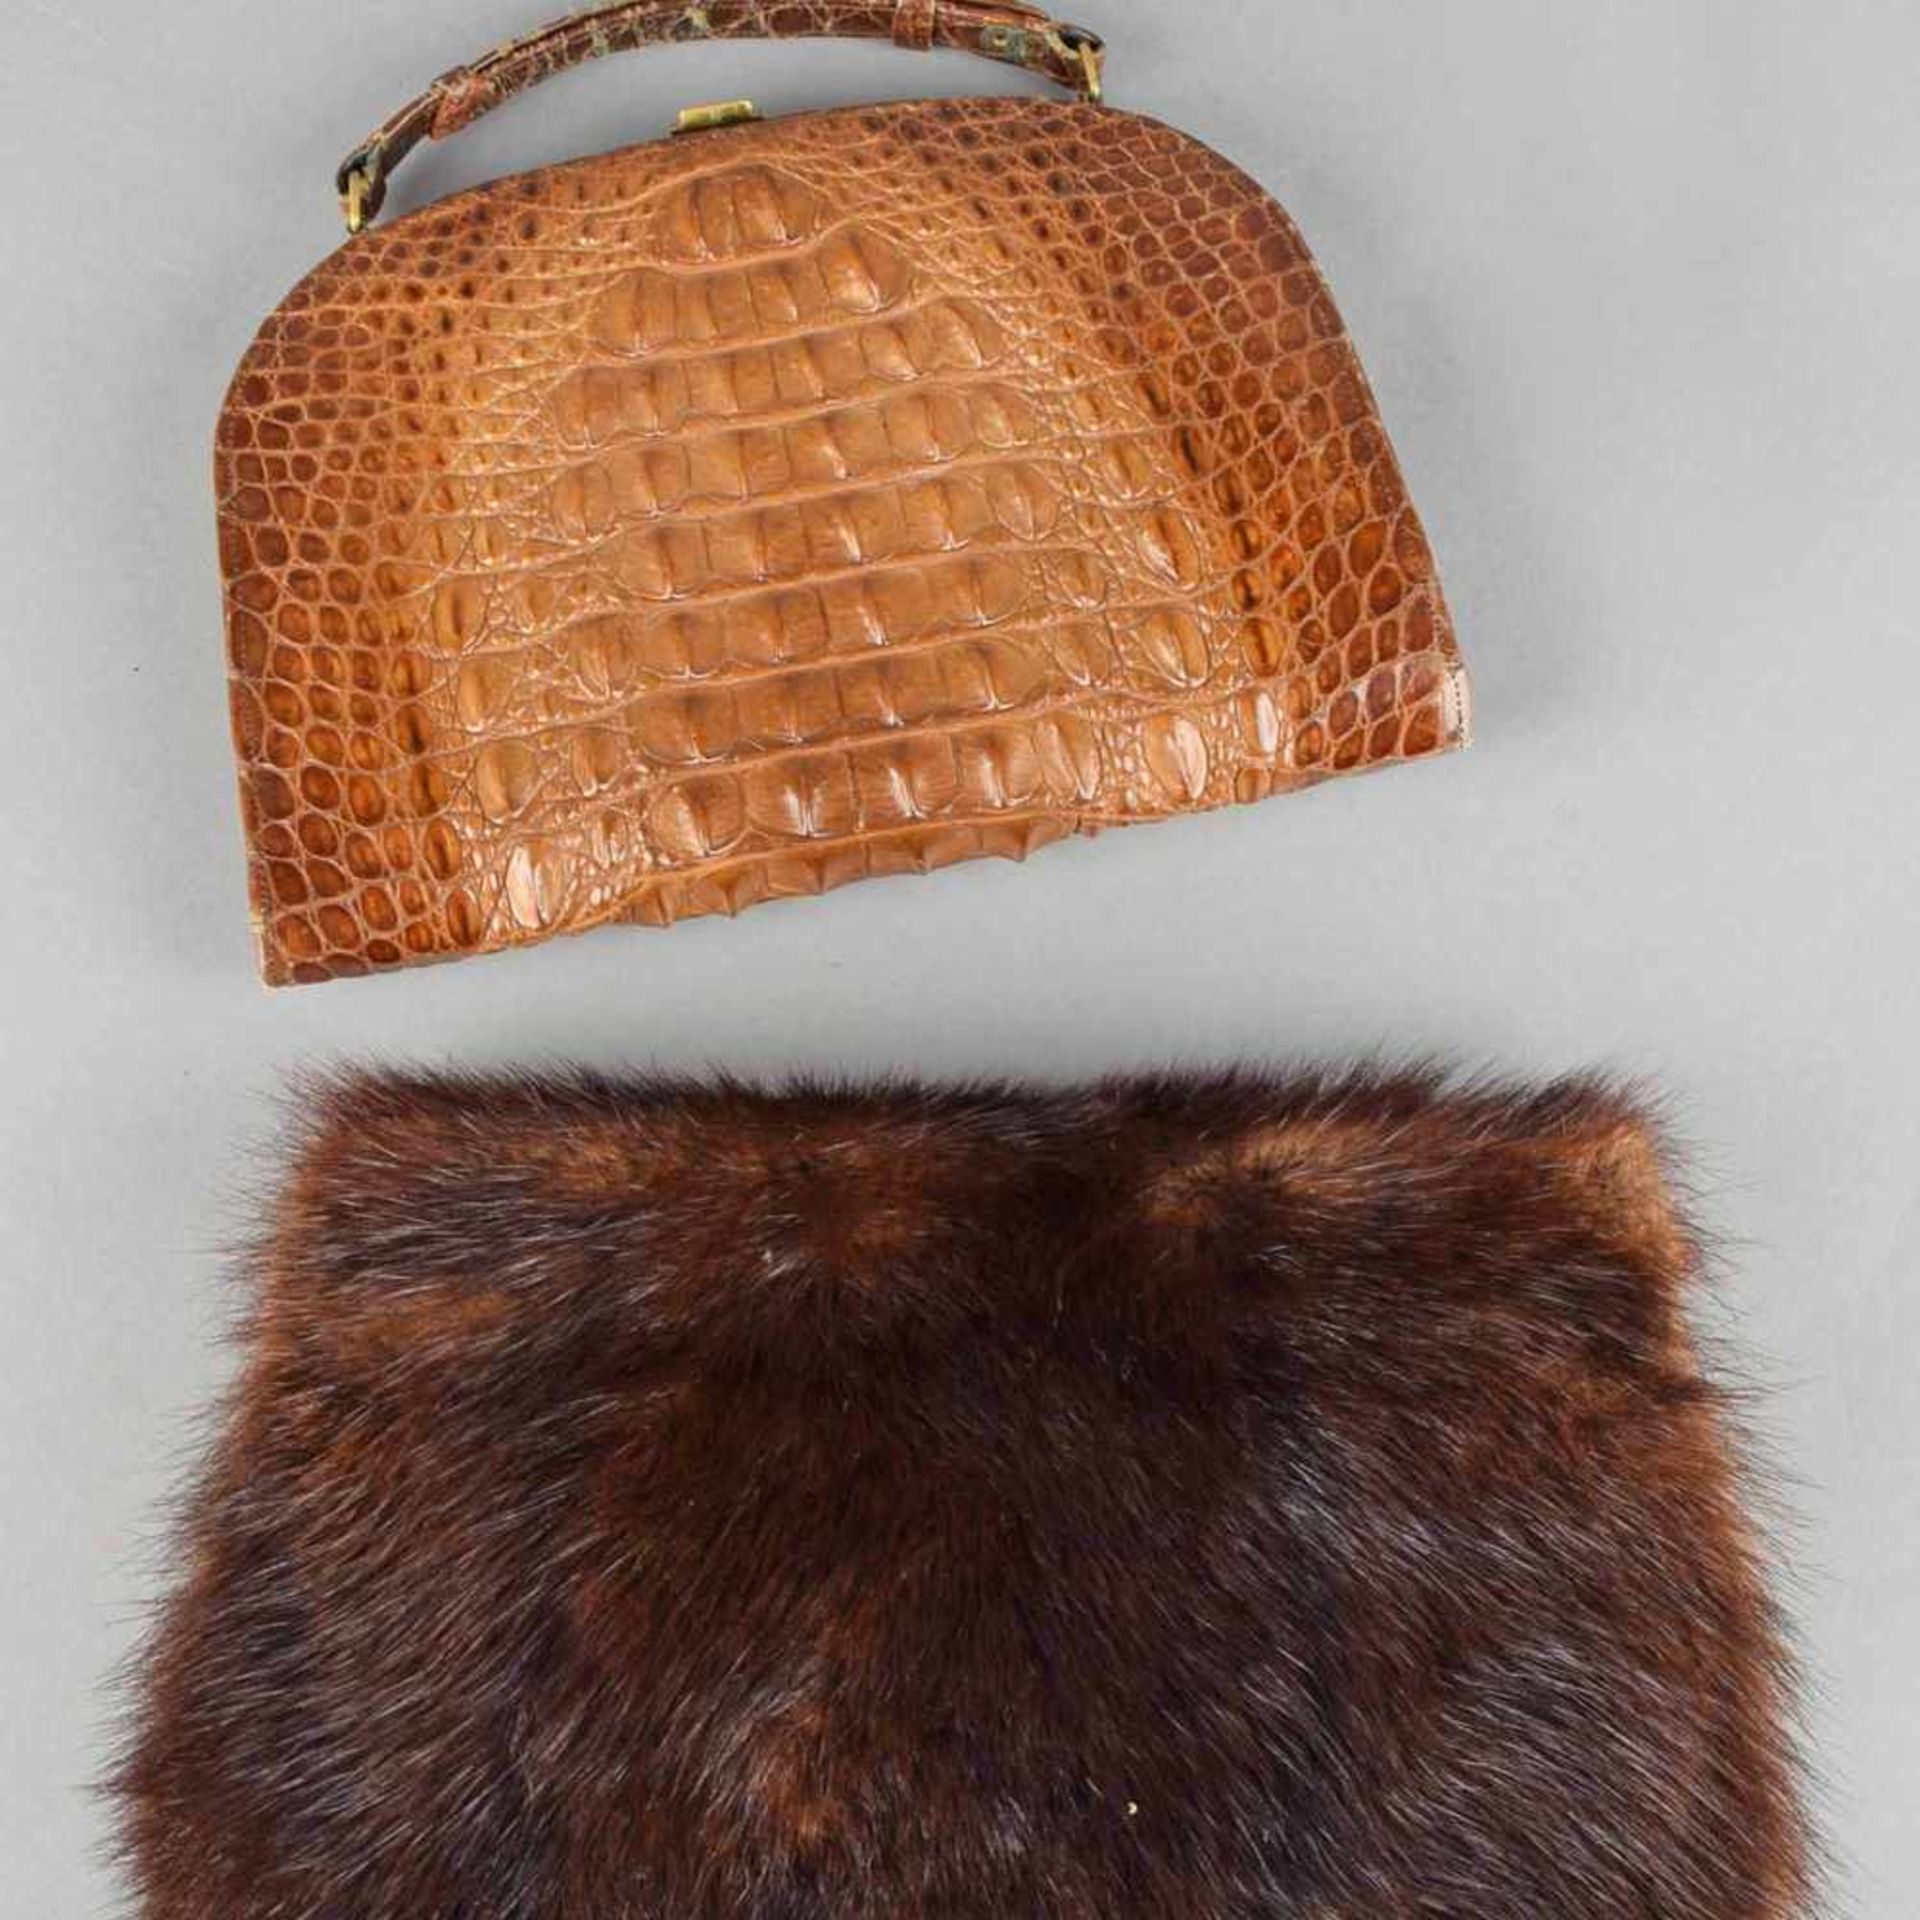 Zwei Damenhandtaschen 1 x Krokodilleder, Metallbügelverschluss mit Tragegriff, innen braune